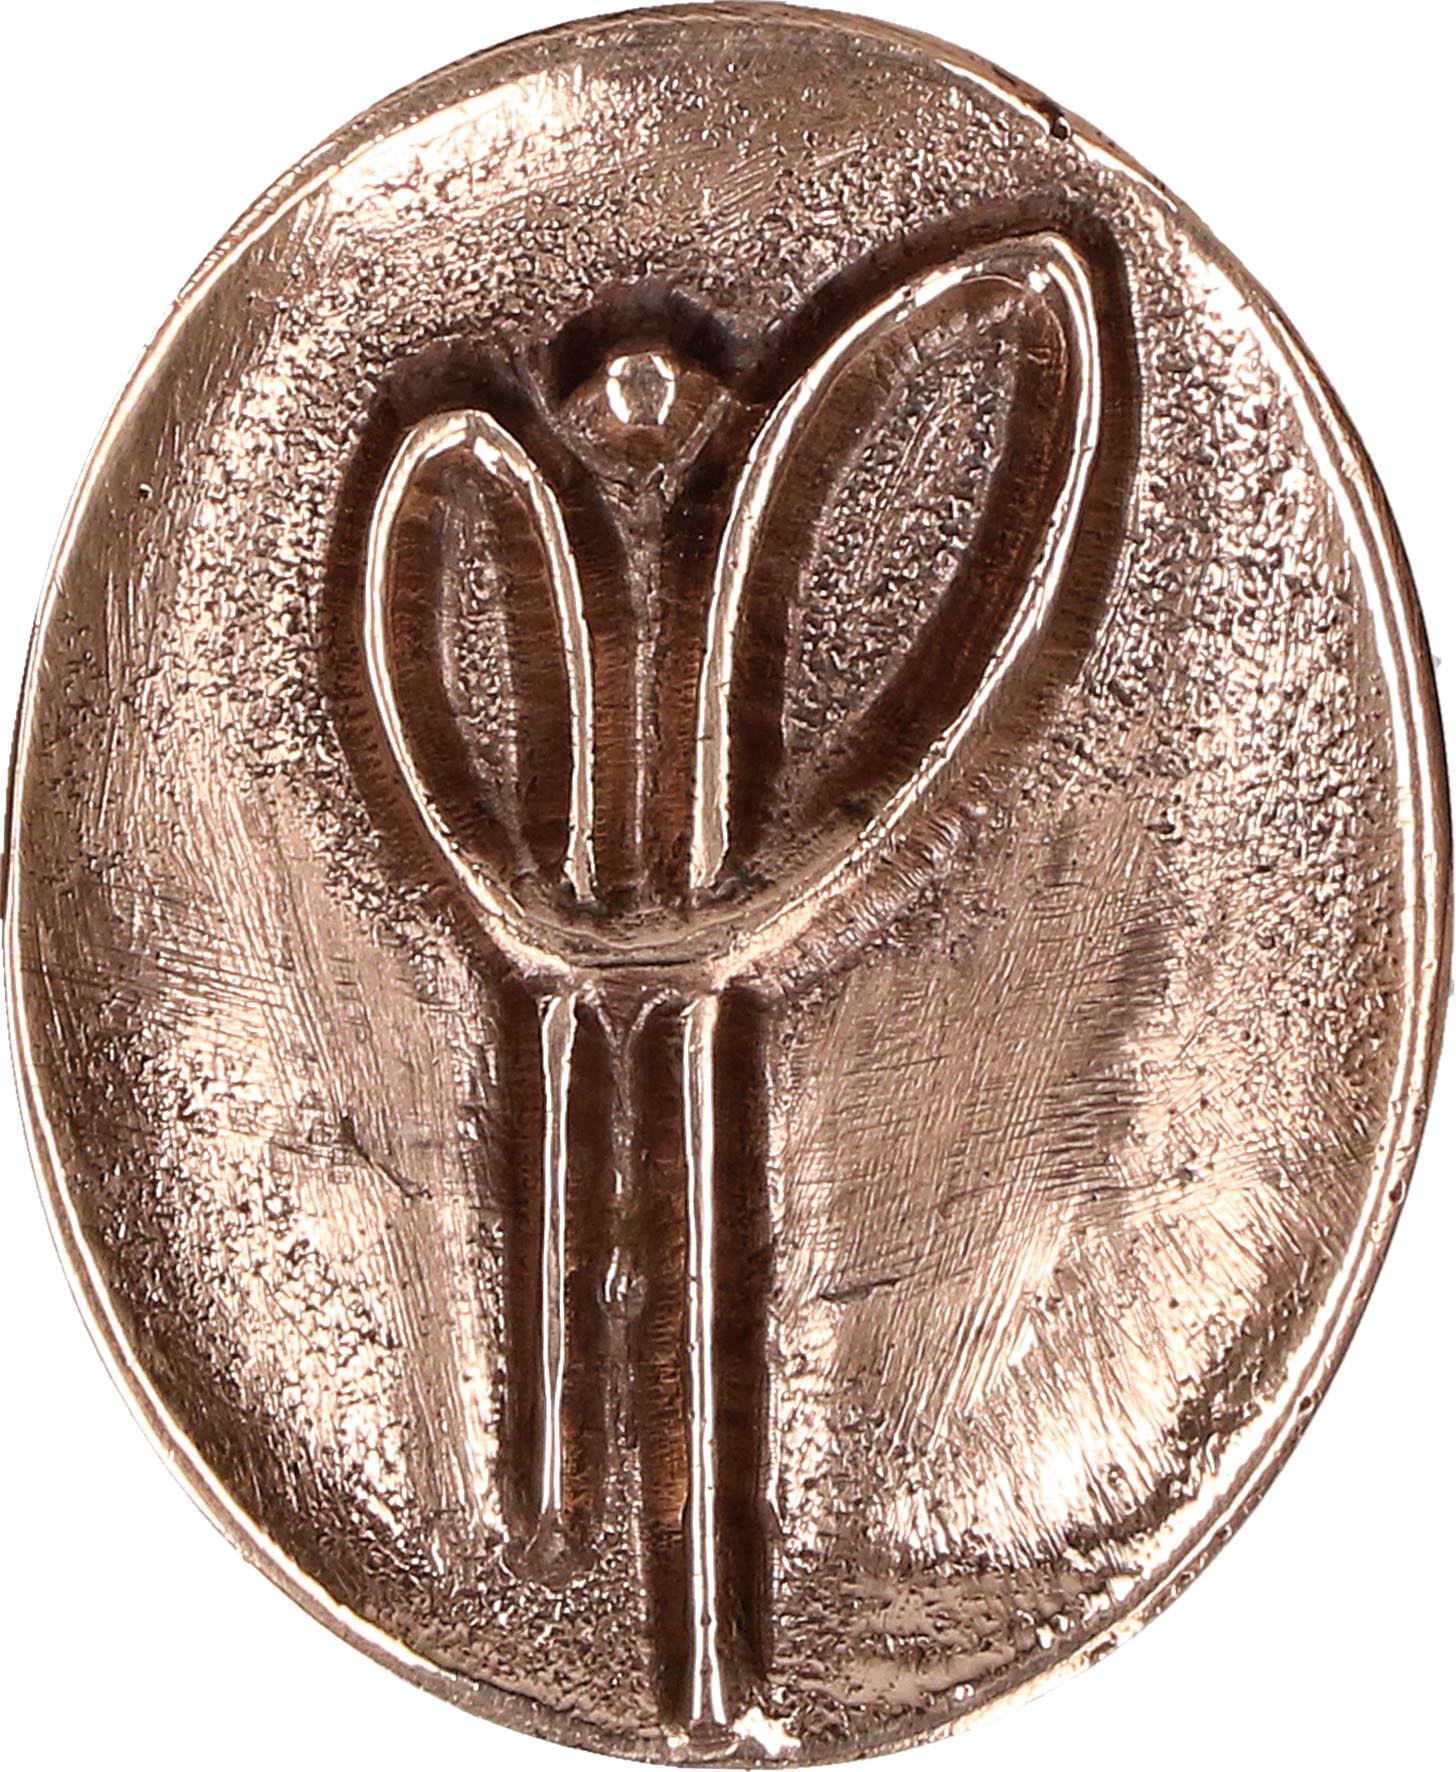 Bronzeplakette mit Magnet - Schutzengel